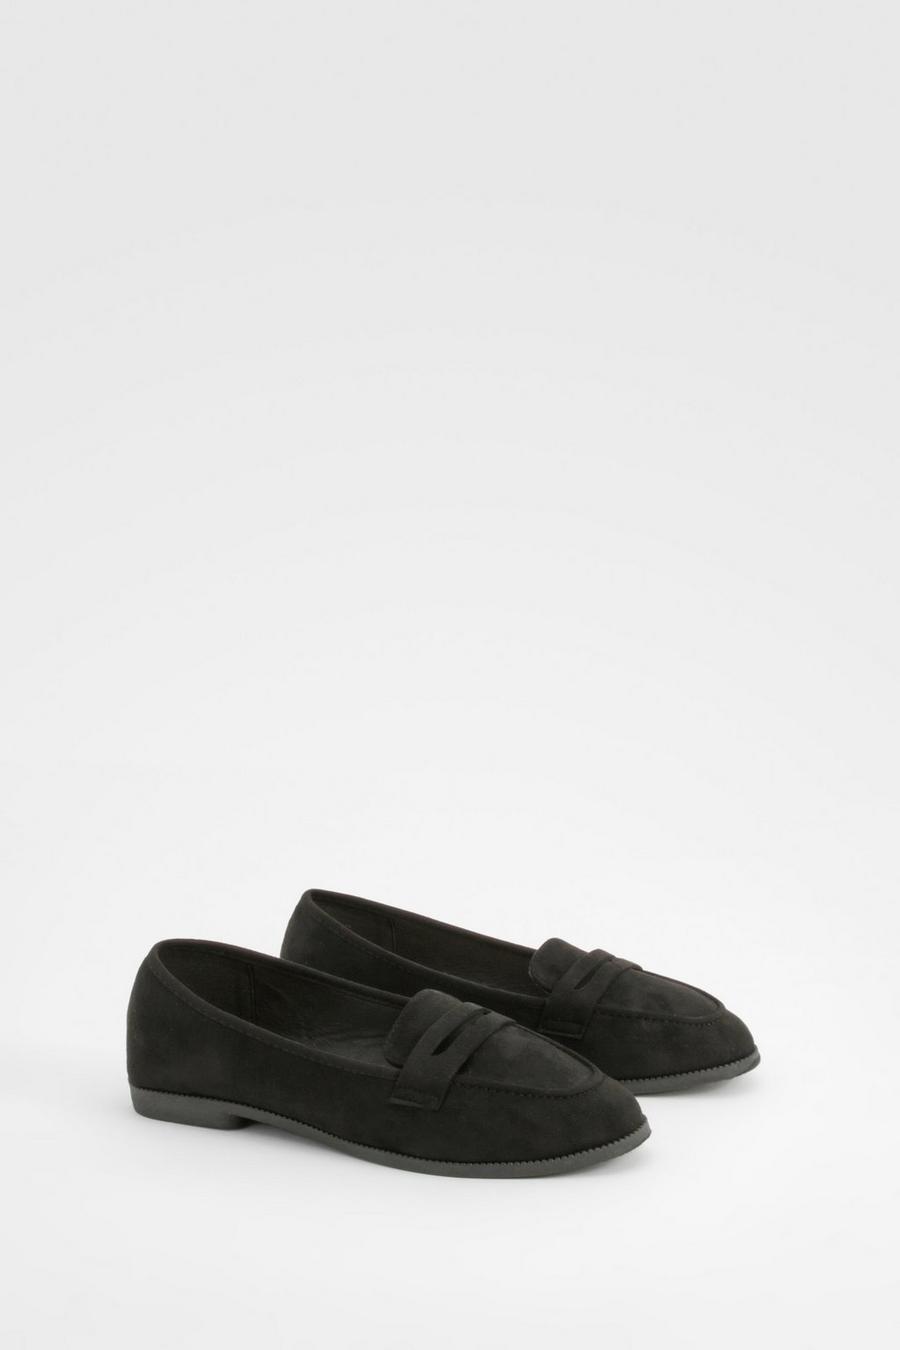 Black Wide Width Loafers